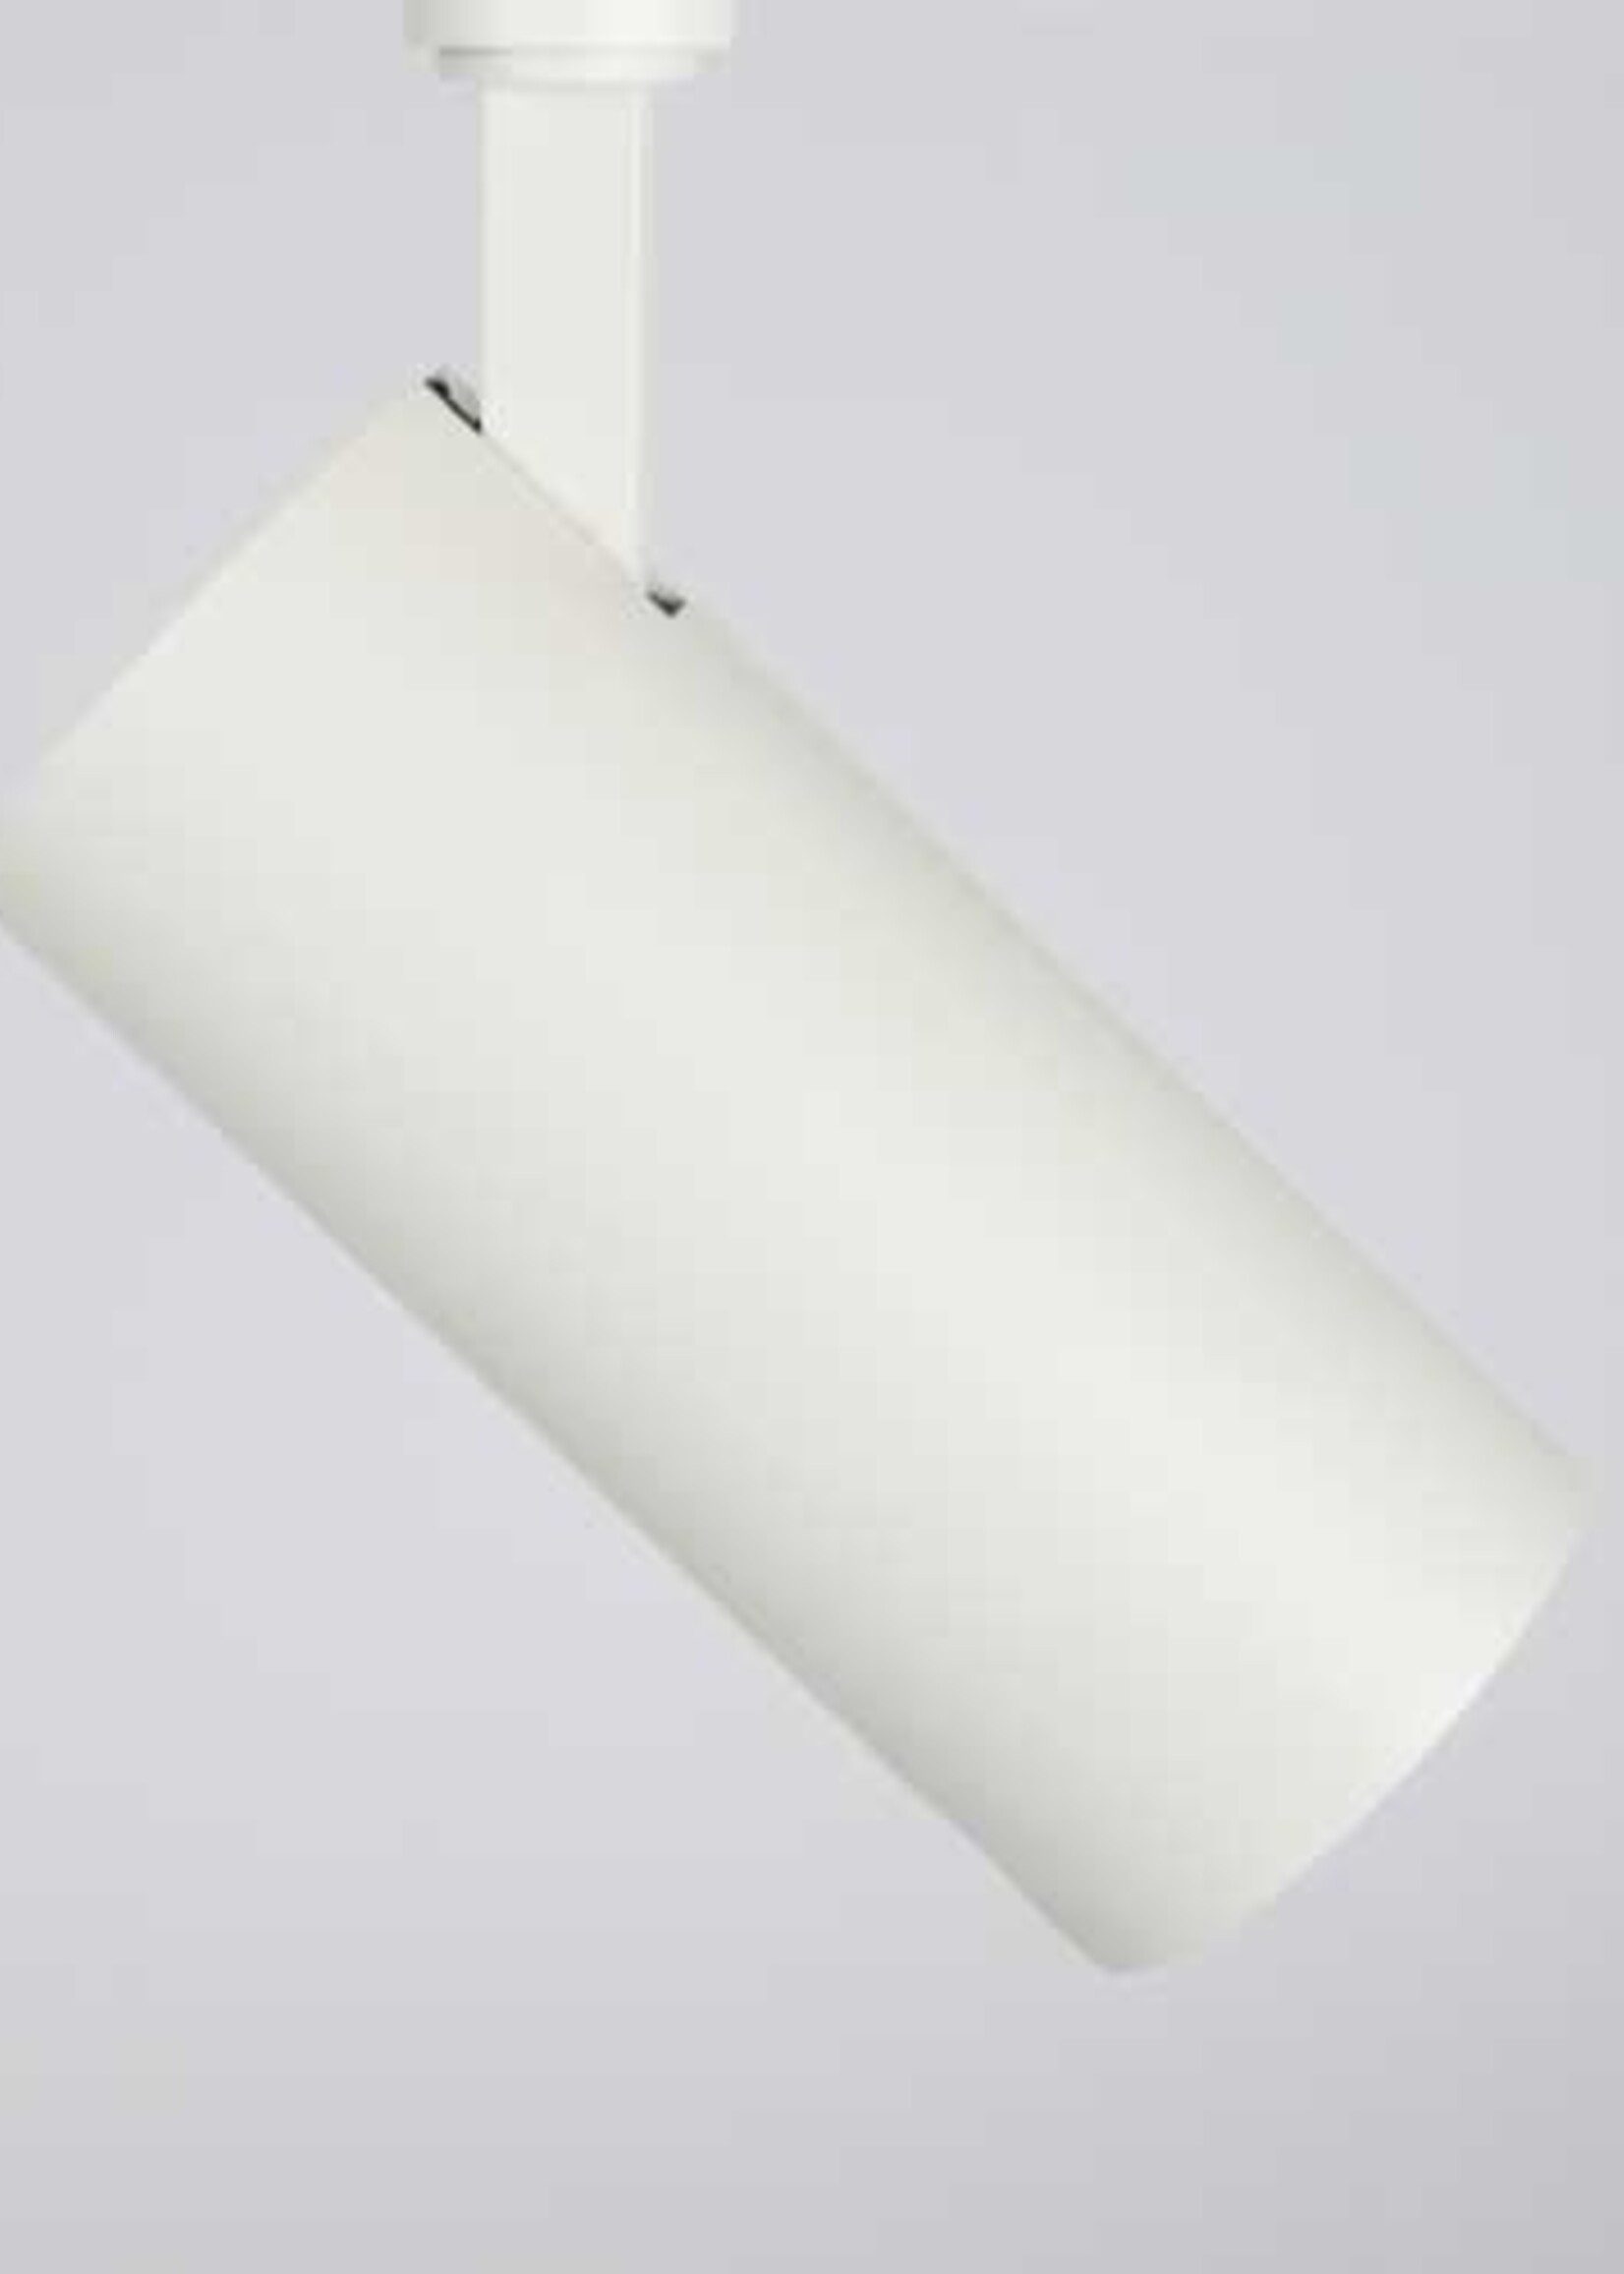 LEDWINKEL-Online LED Track Light Head 3 phase white 30W